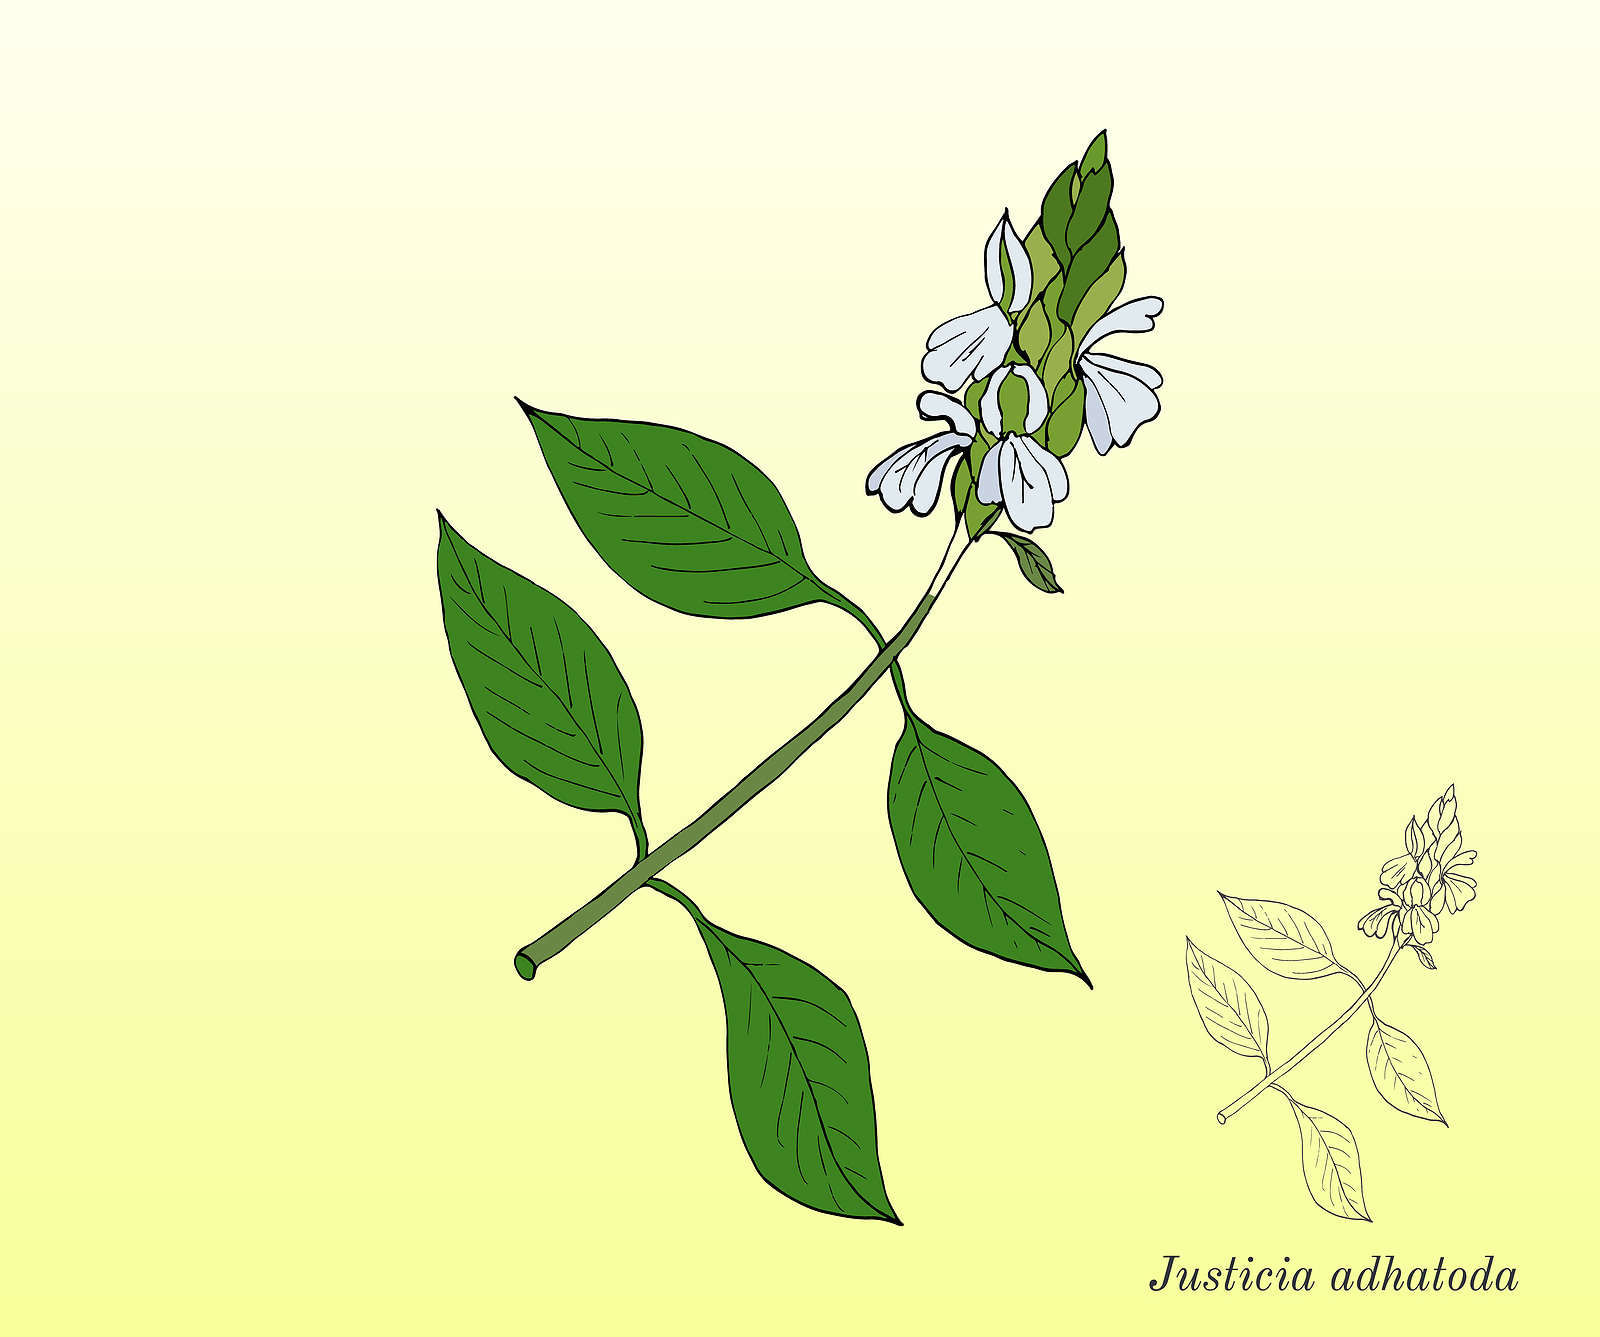 ஆடாதோடை பயன்கள், Adathodai Plant Uses in Tamil